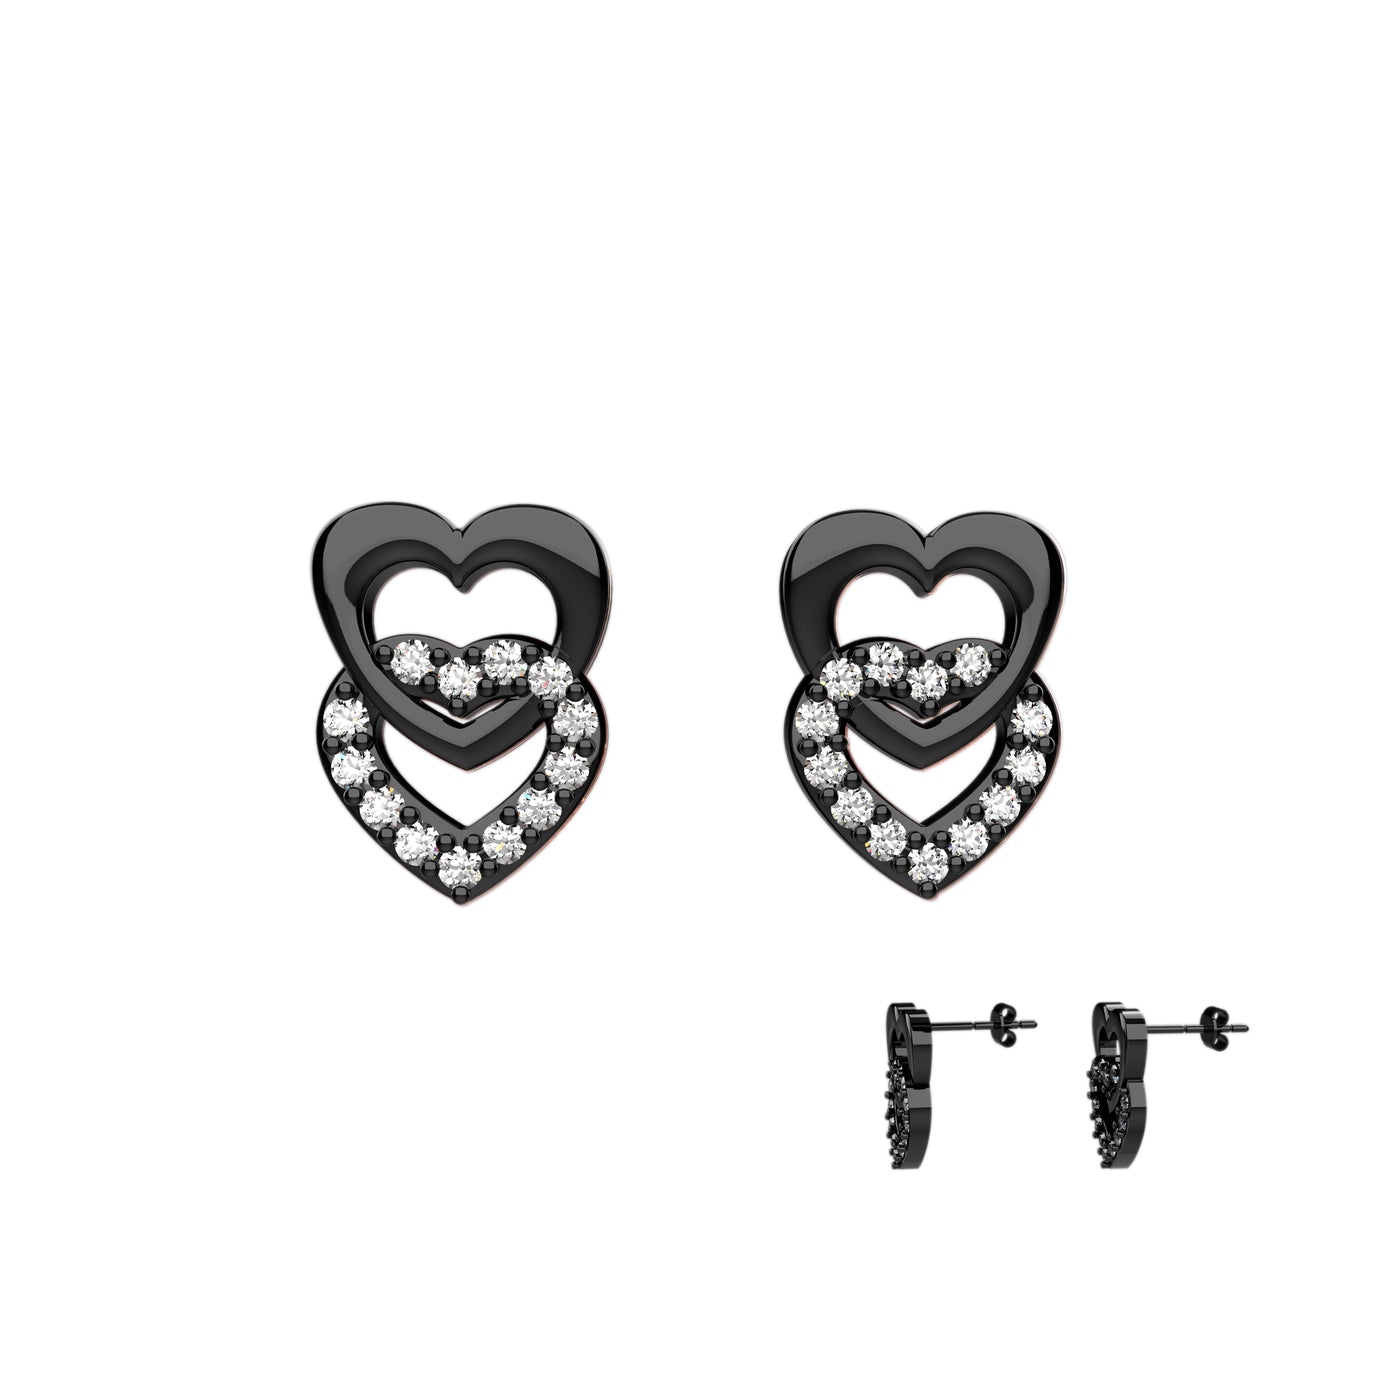 Black Double Heart Earrings